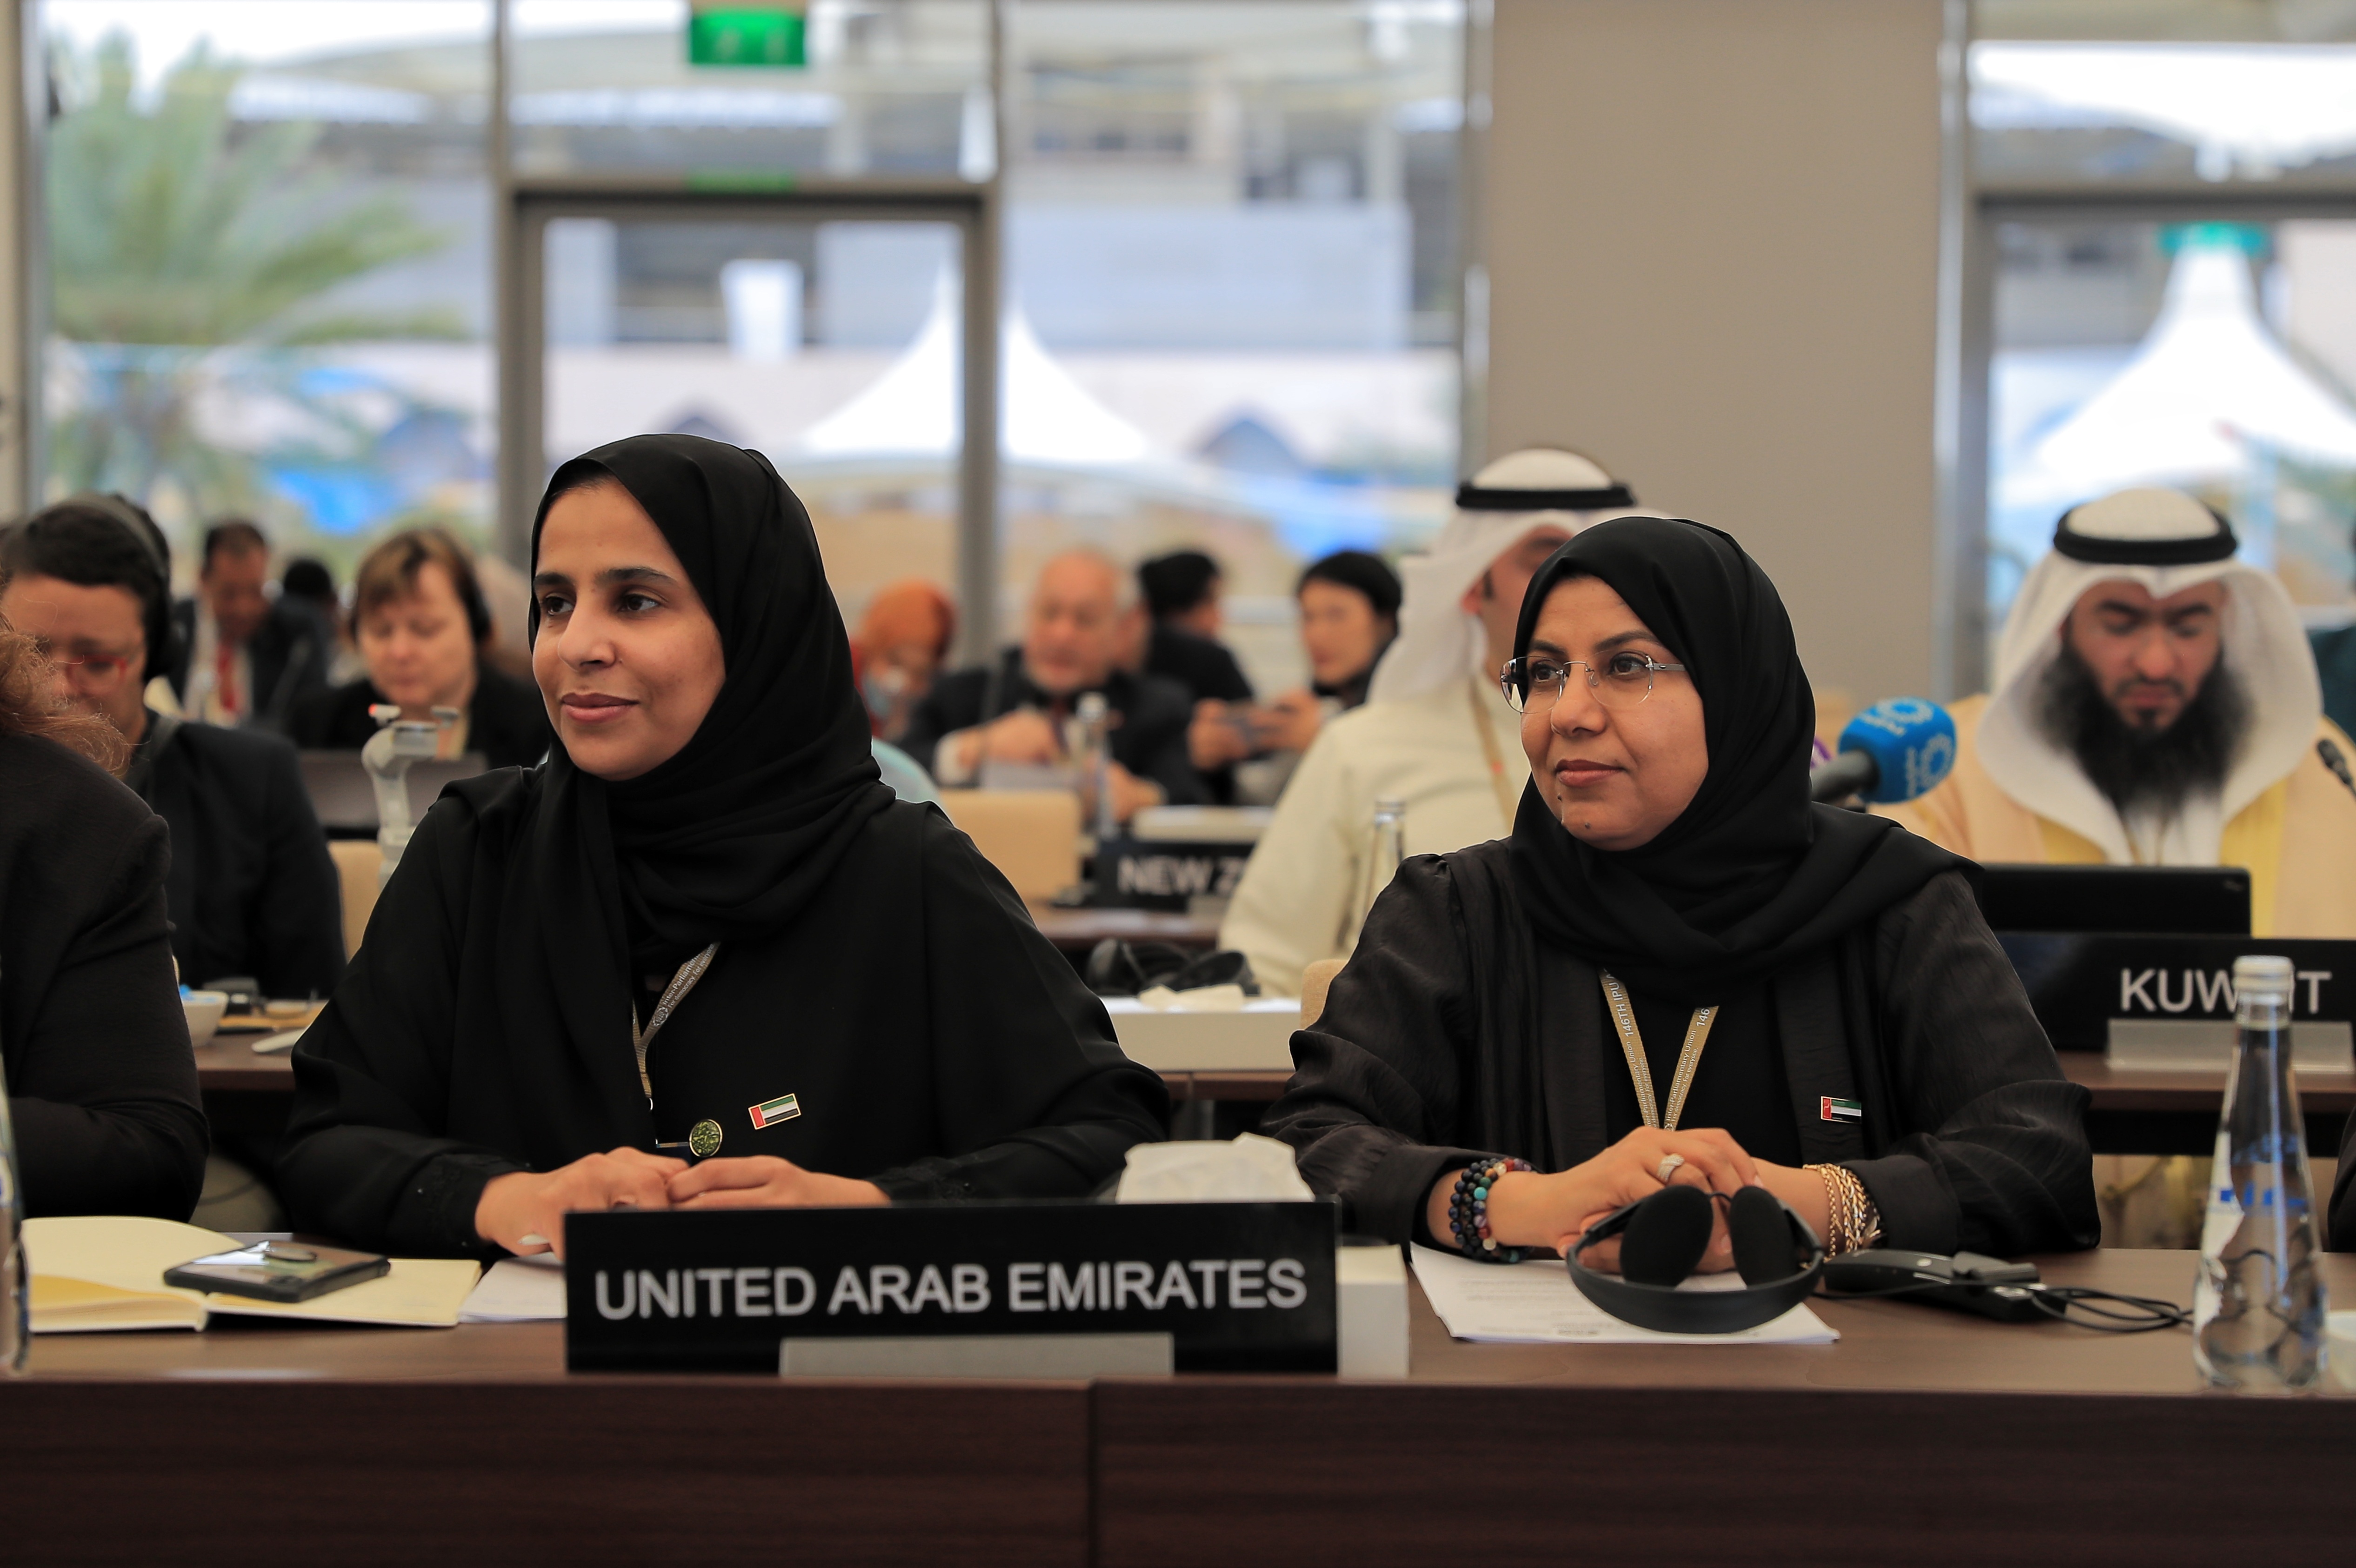 سعادة الدكتورة موزة العامري تشارك في اجتماع لجنة الديمقراطية وحقوق الإنسان ضمن اجتماعات الاتحاد البرلماني الدولي في البحرين